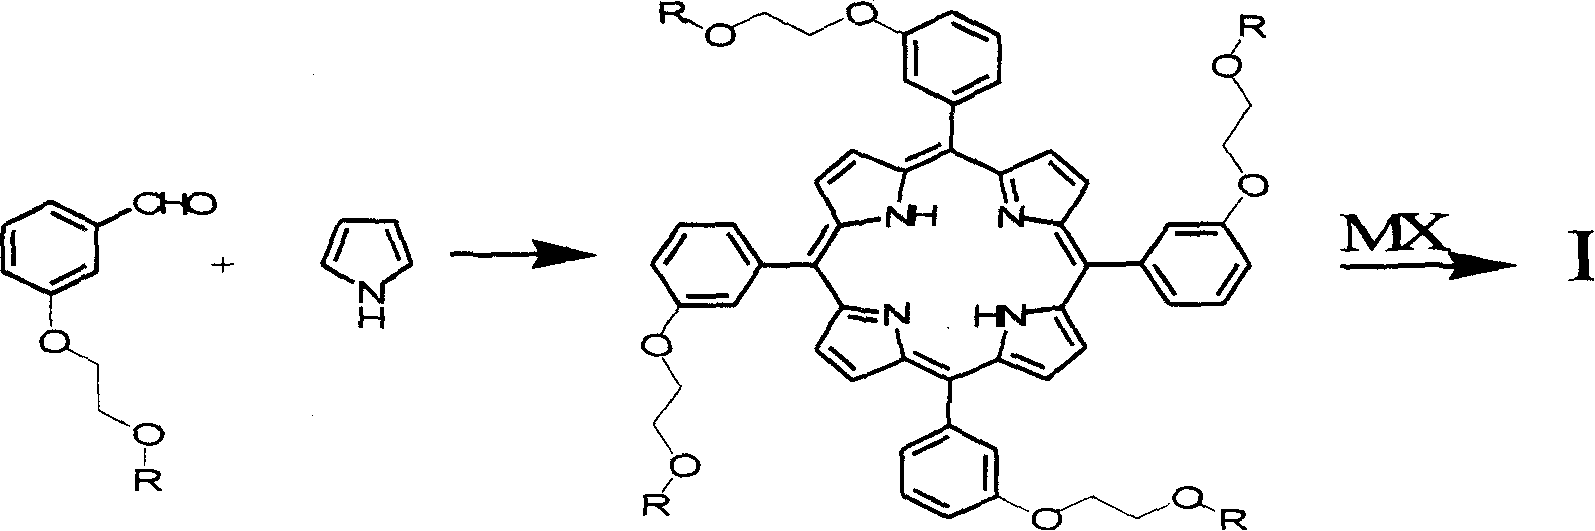 Porphyrin derivative and application for the same as small molecule antioxidant